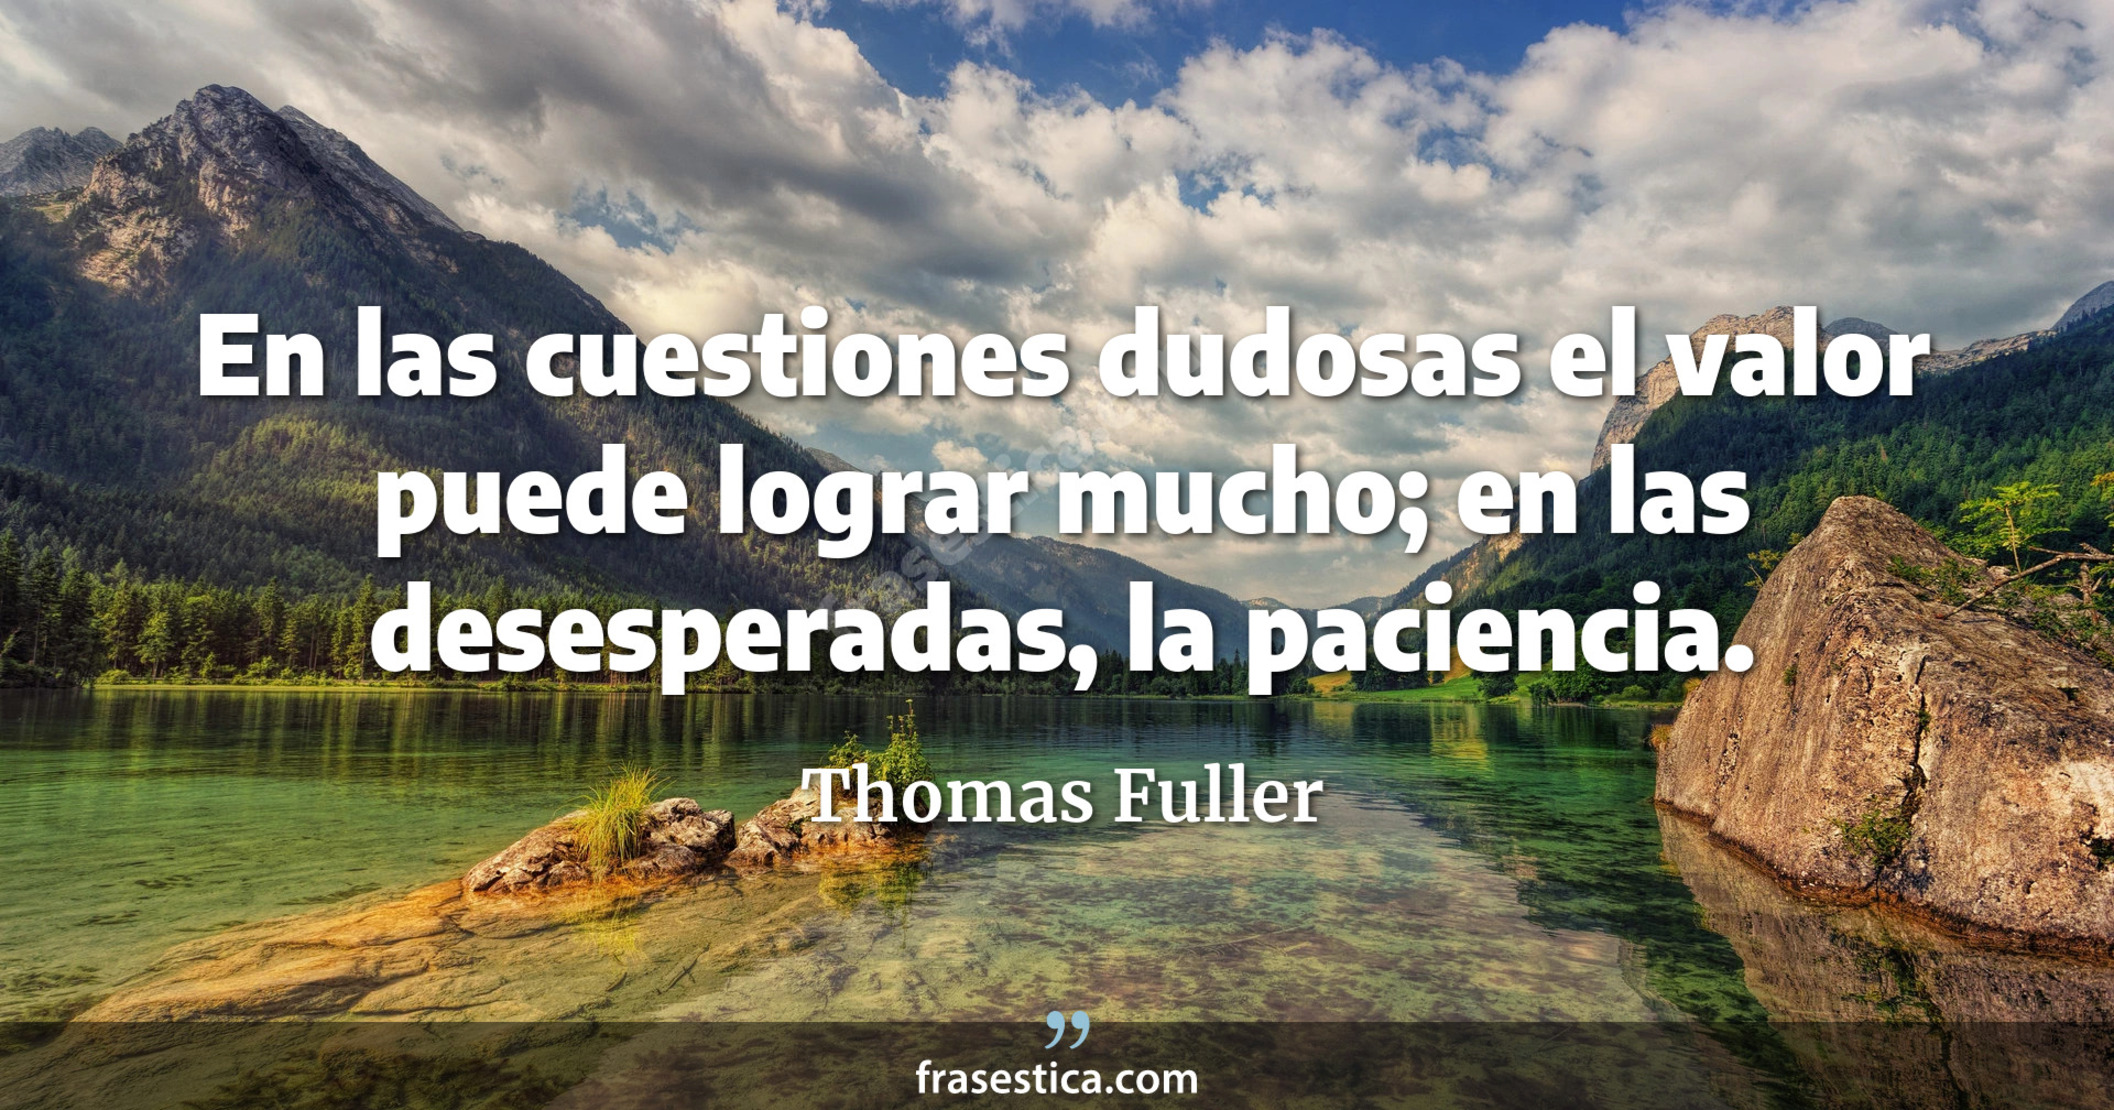 En las cuestiones dudosas el valor puede lograr mucho; en las desesperadas, la paciencia. - Thomas Fuller